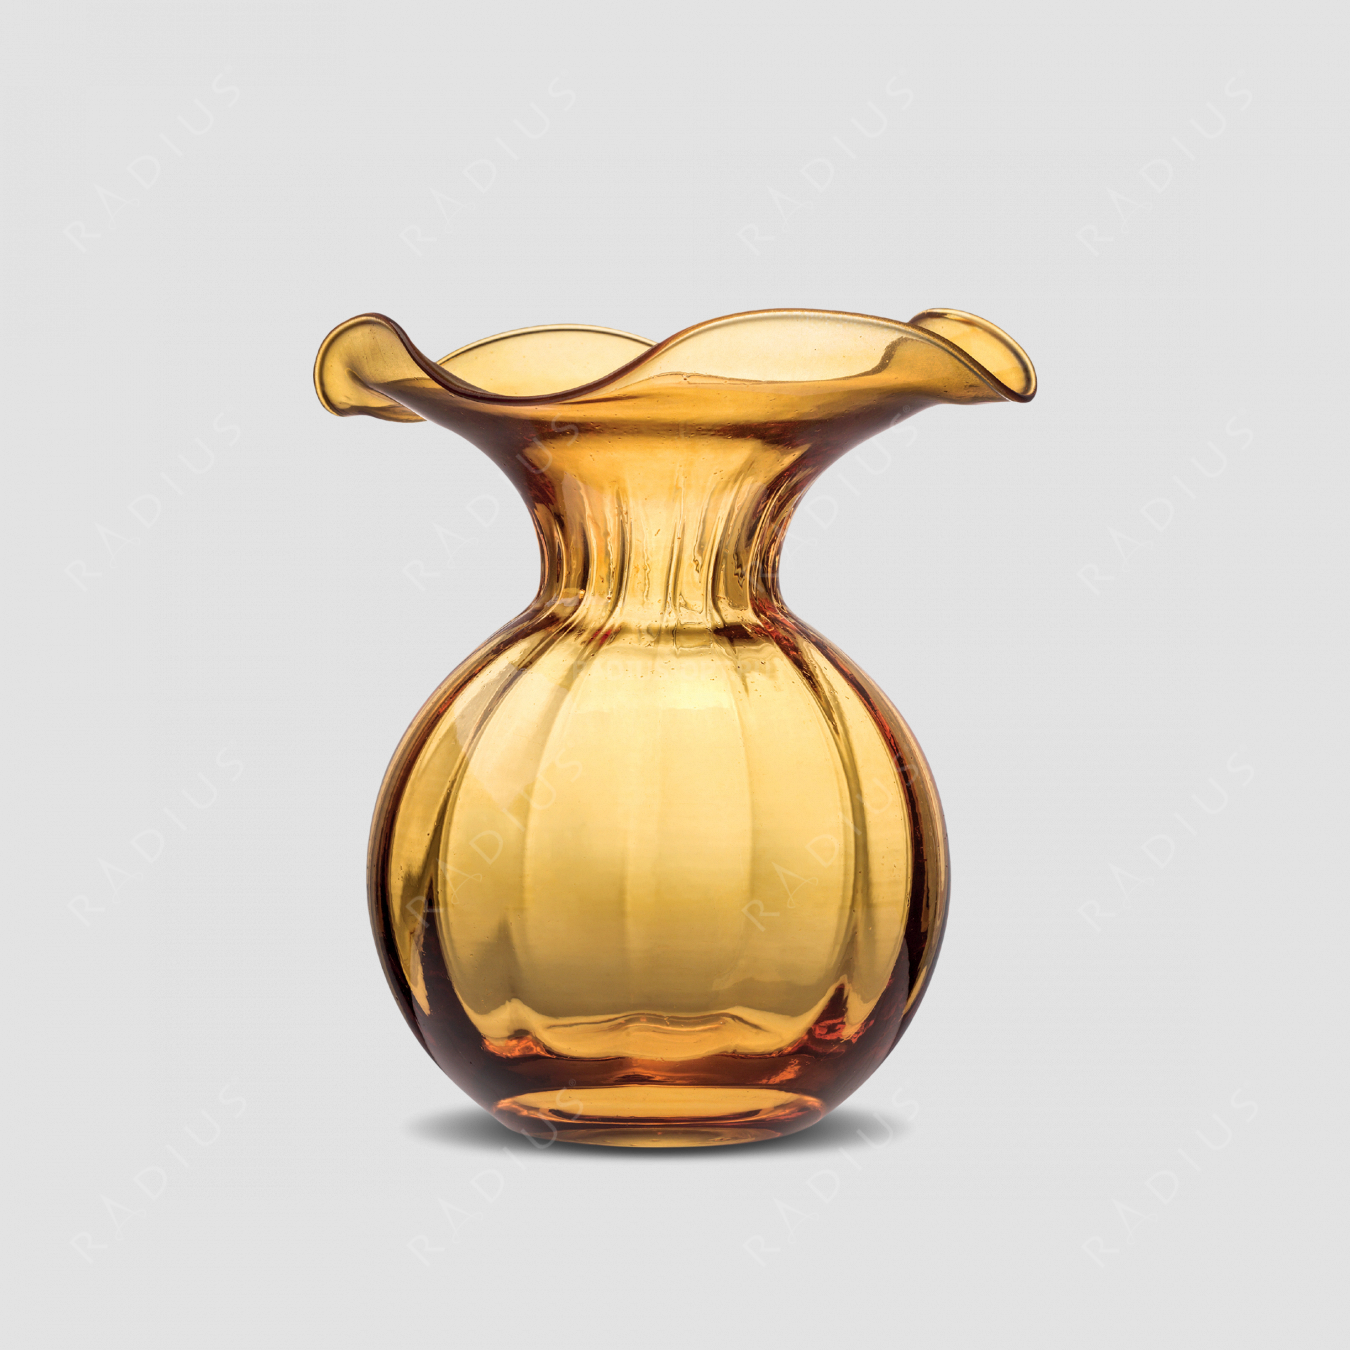 Стеклянная ваза для цветов, диаметр: 15 см, высота: 18 см, материал: стекло, цвет: медовый, серия Primula, IVV (Italy), Италия